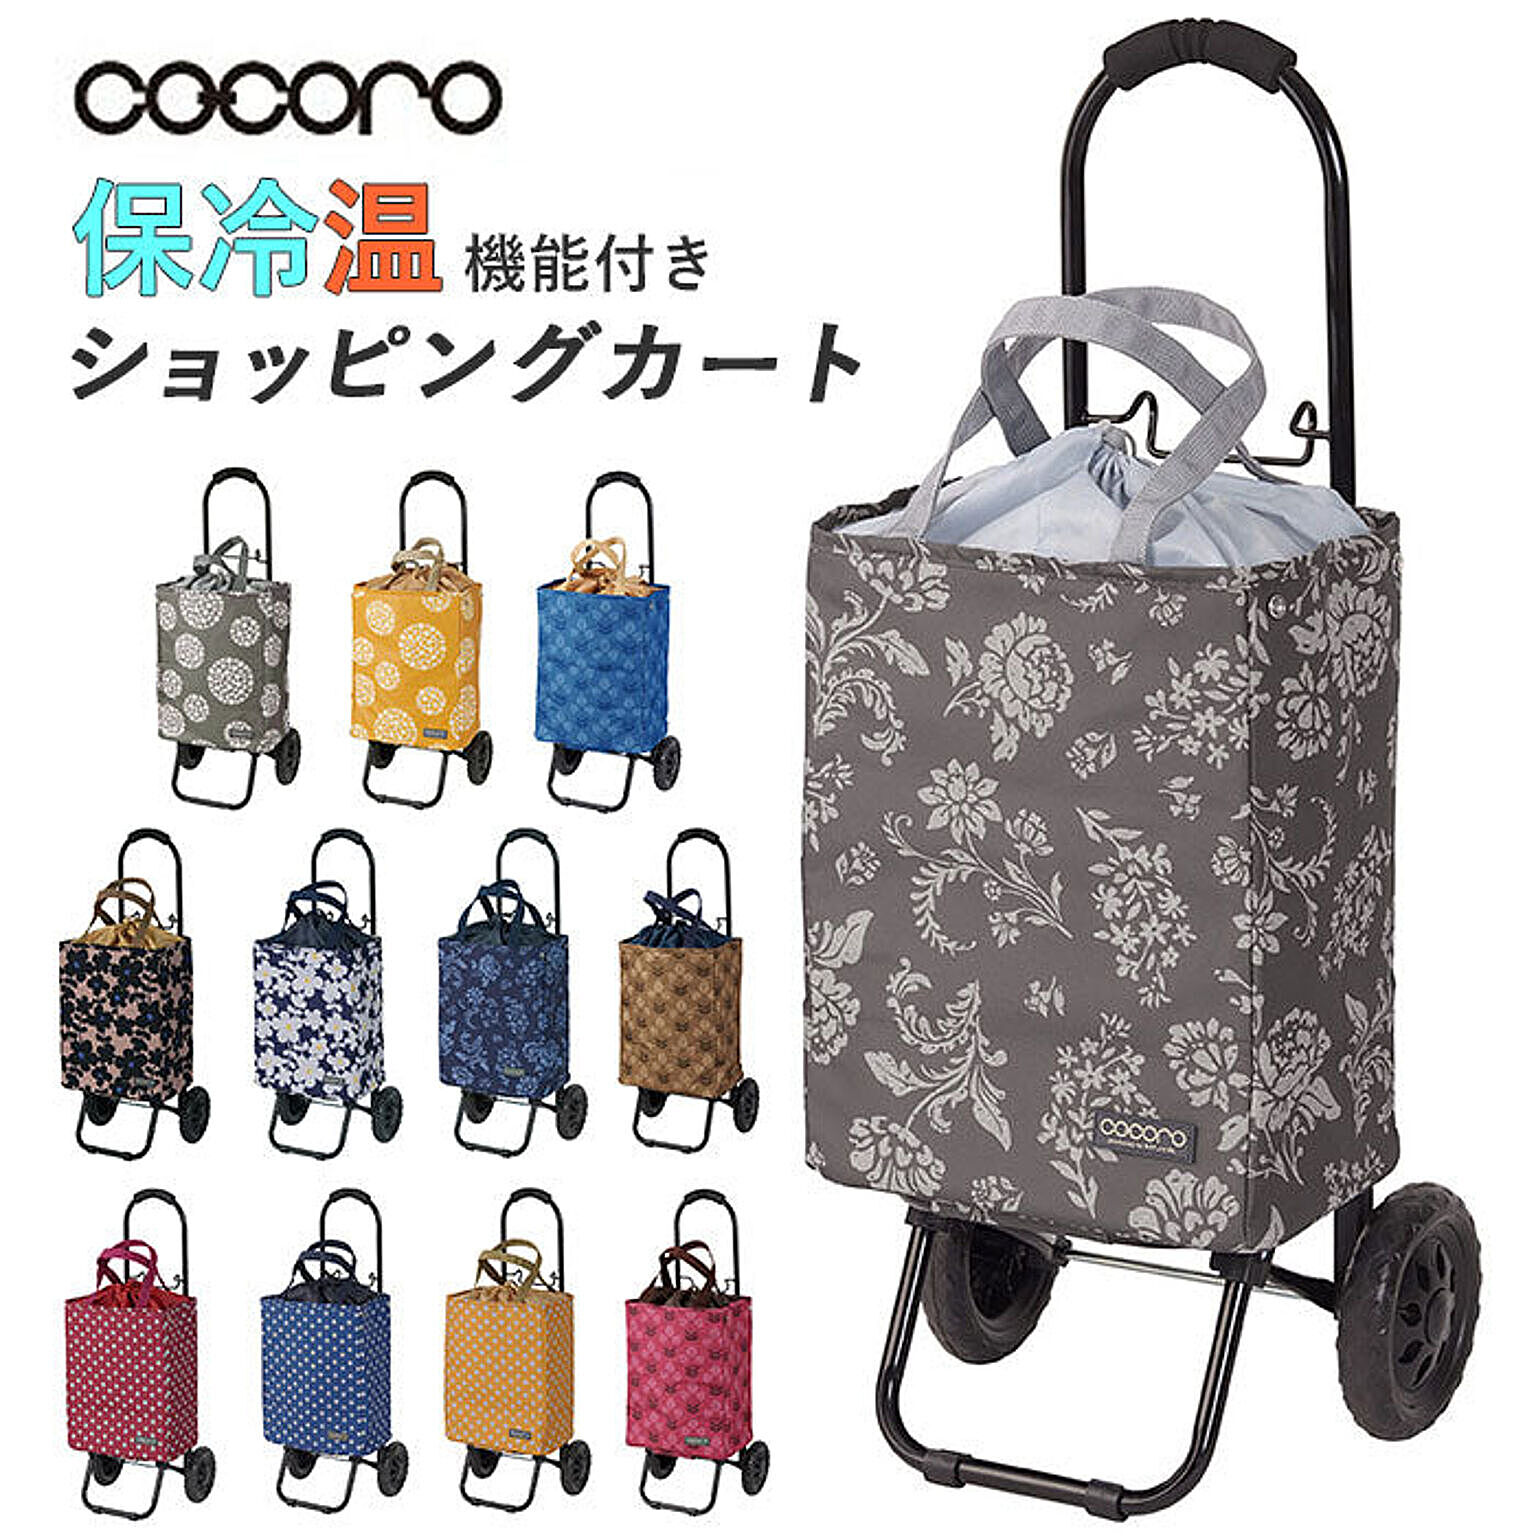 コ・コロ cocorotote2 ショッピングカートトート